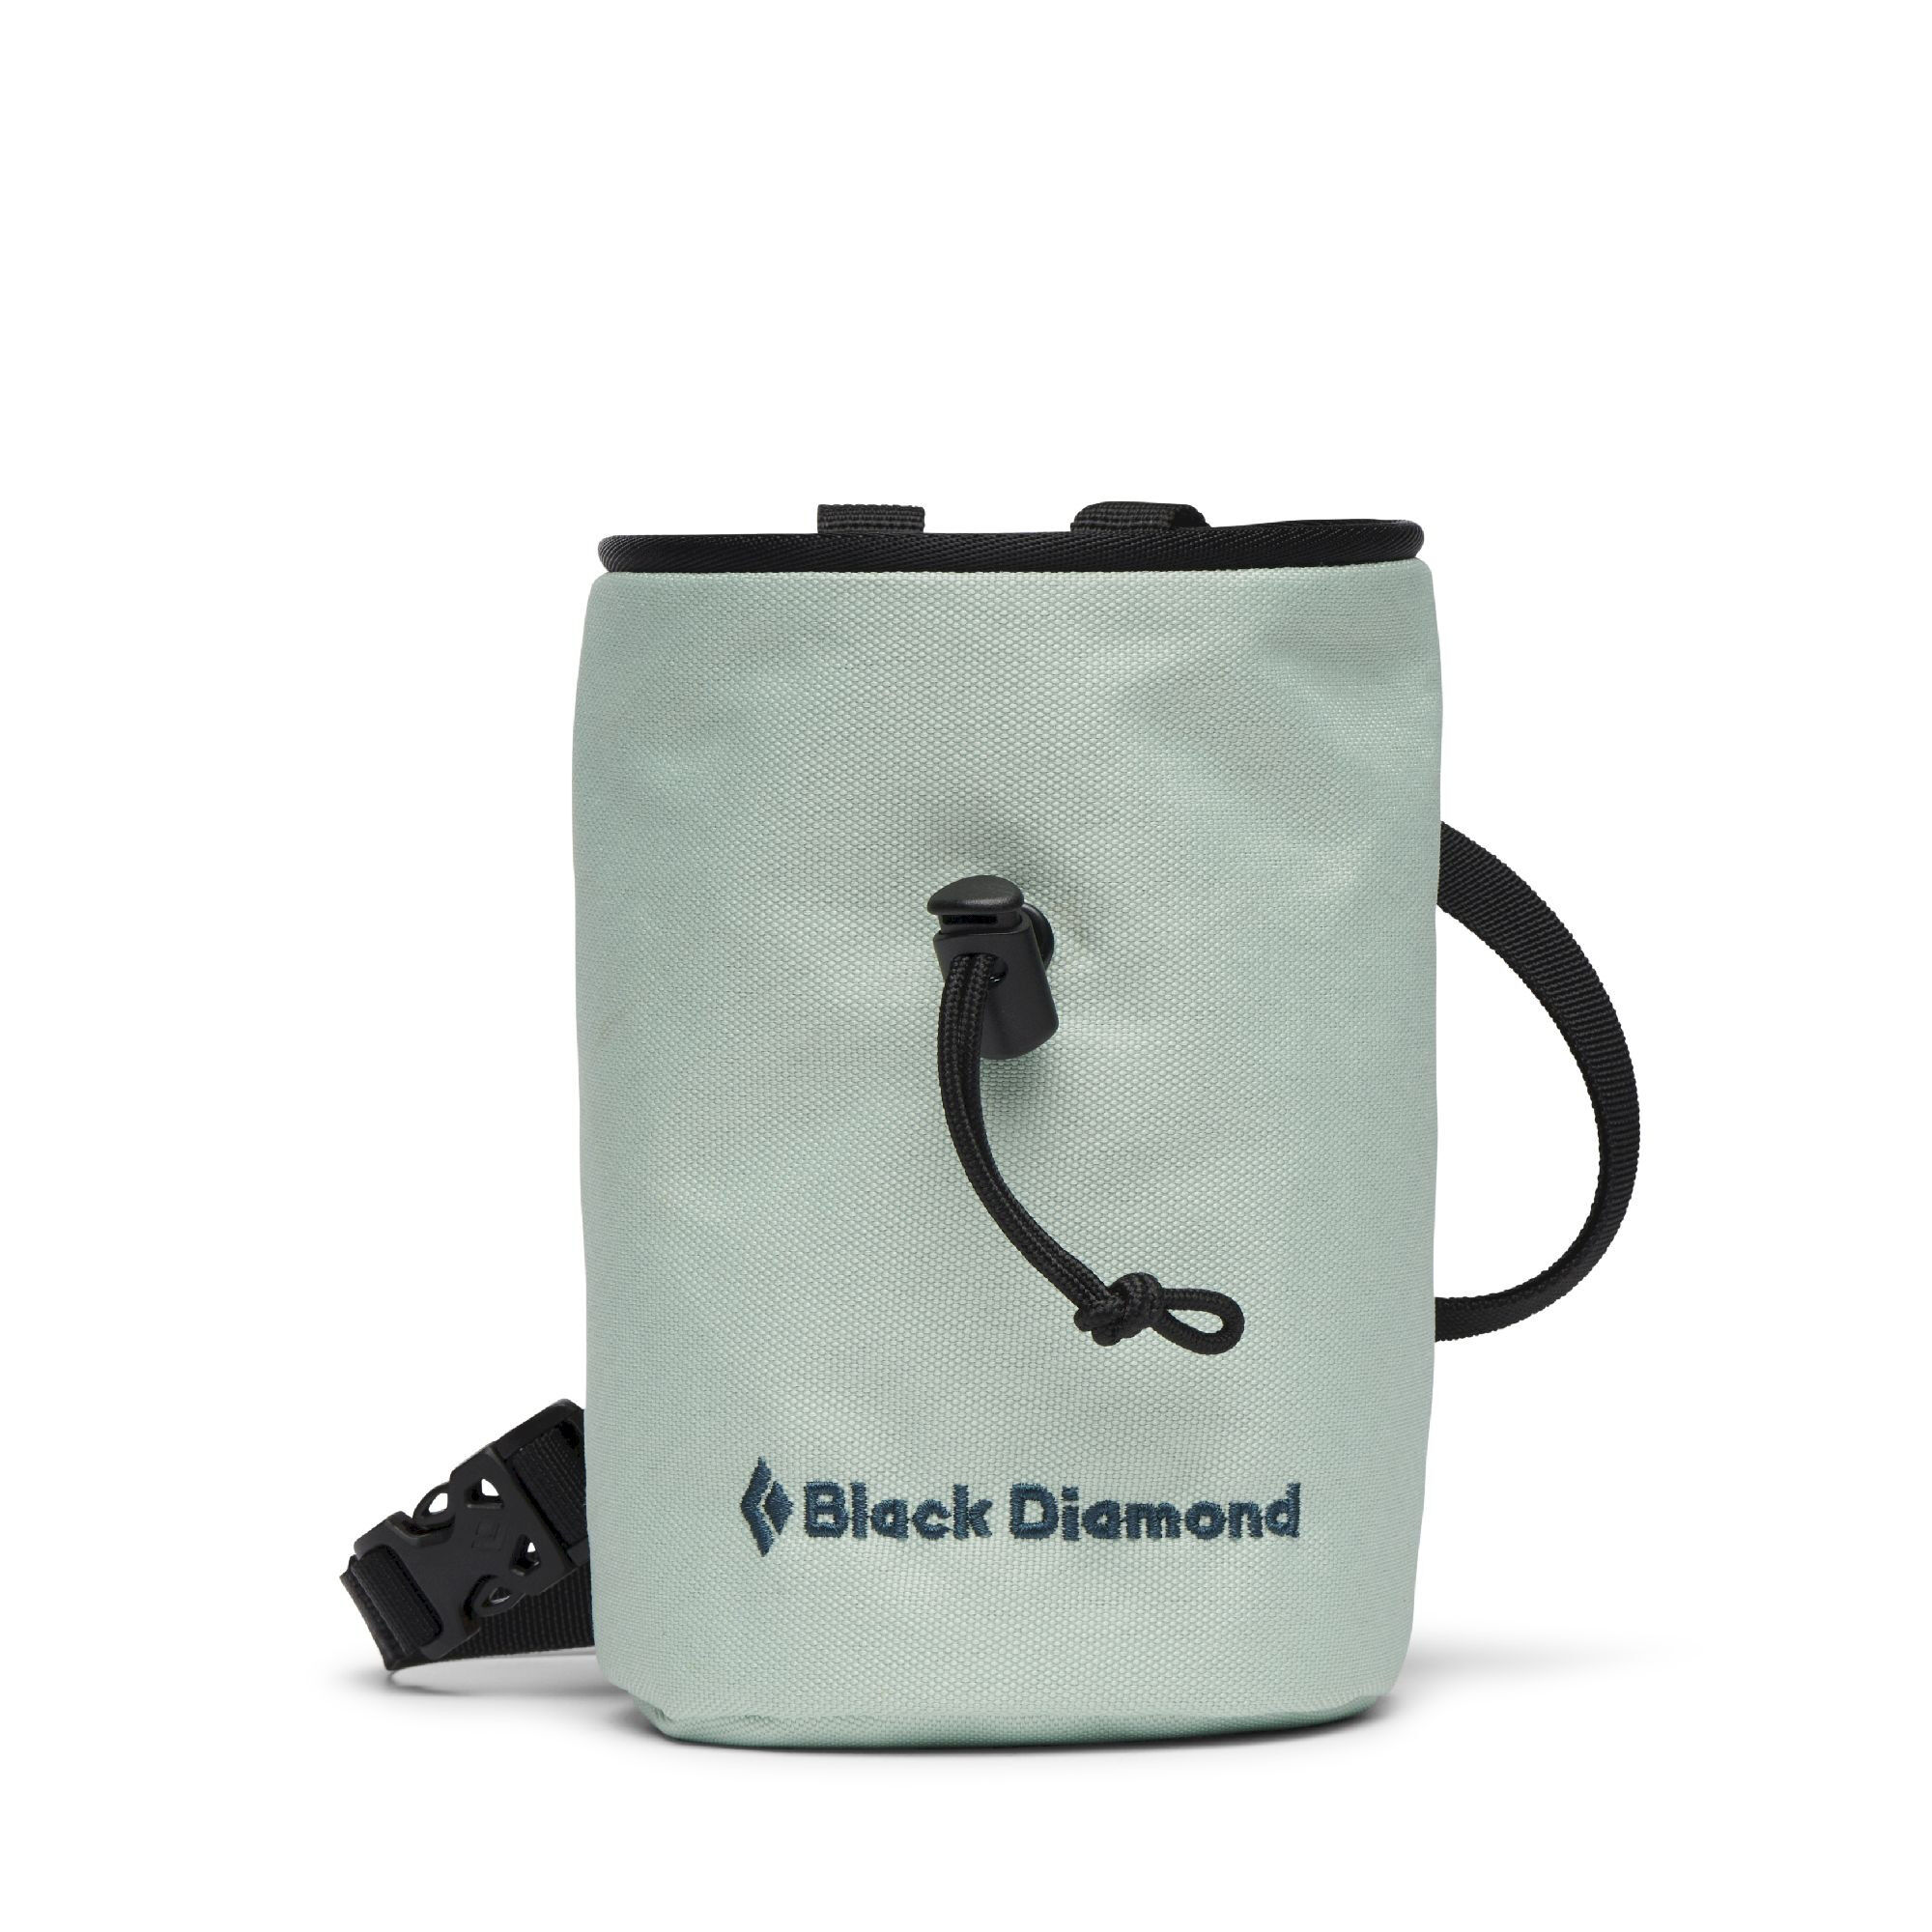 Black Diamond - Mojo Chalk Bag - Chalk bag